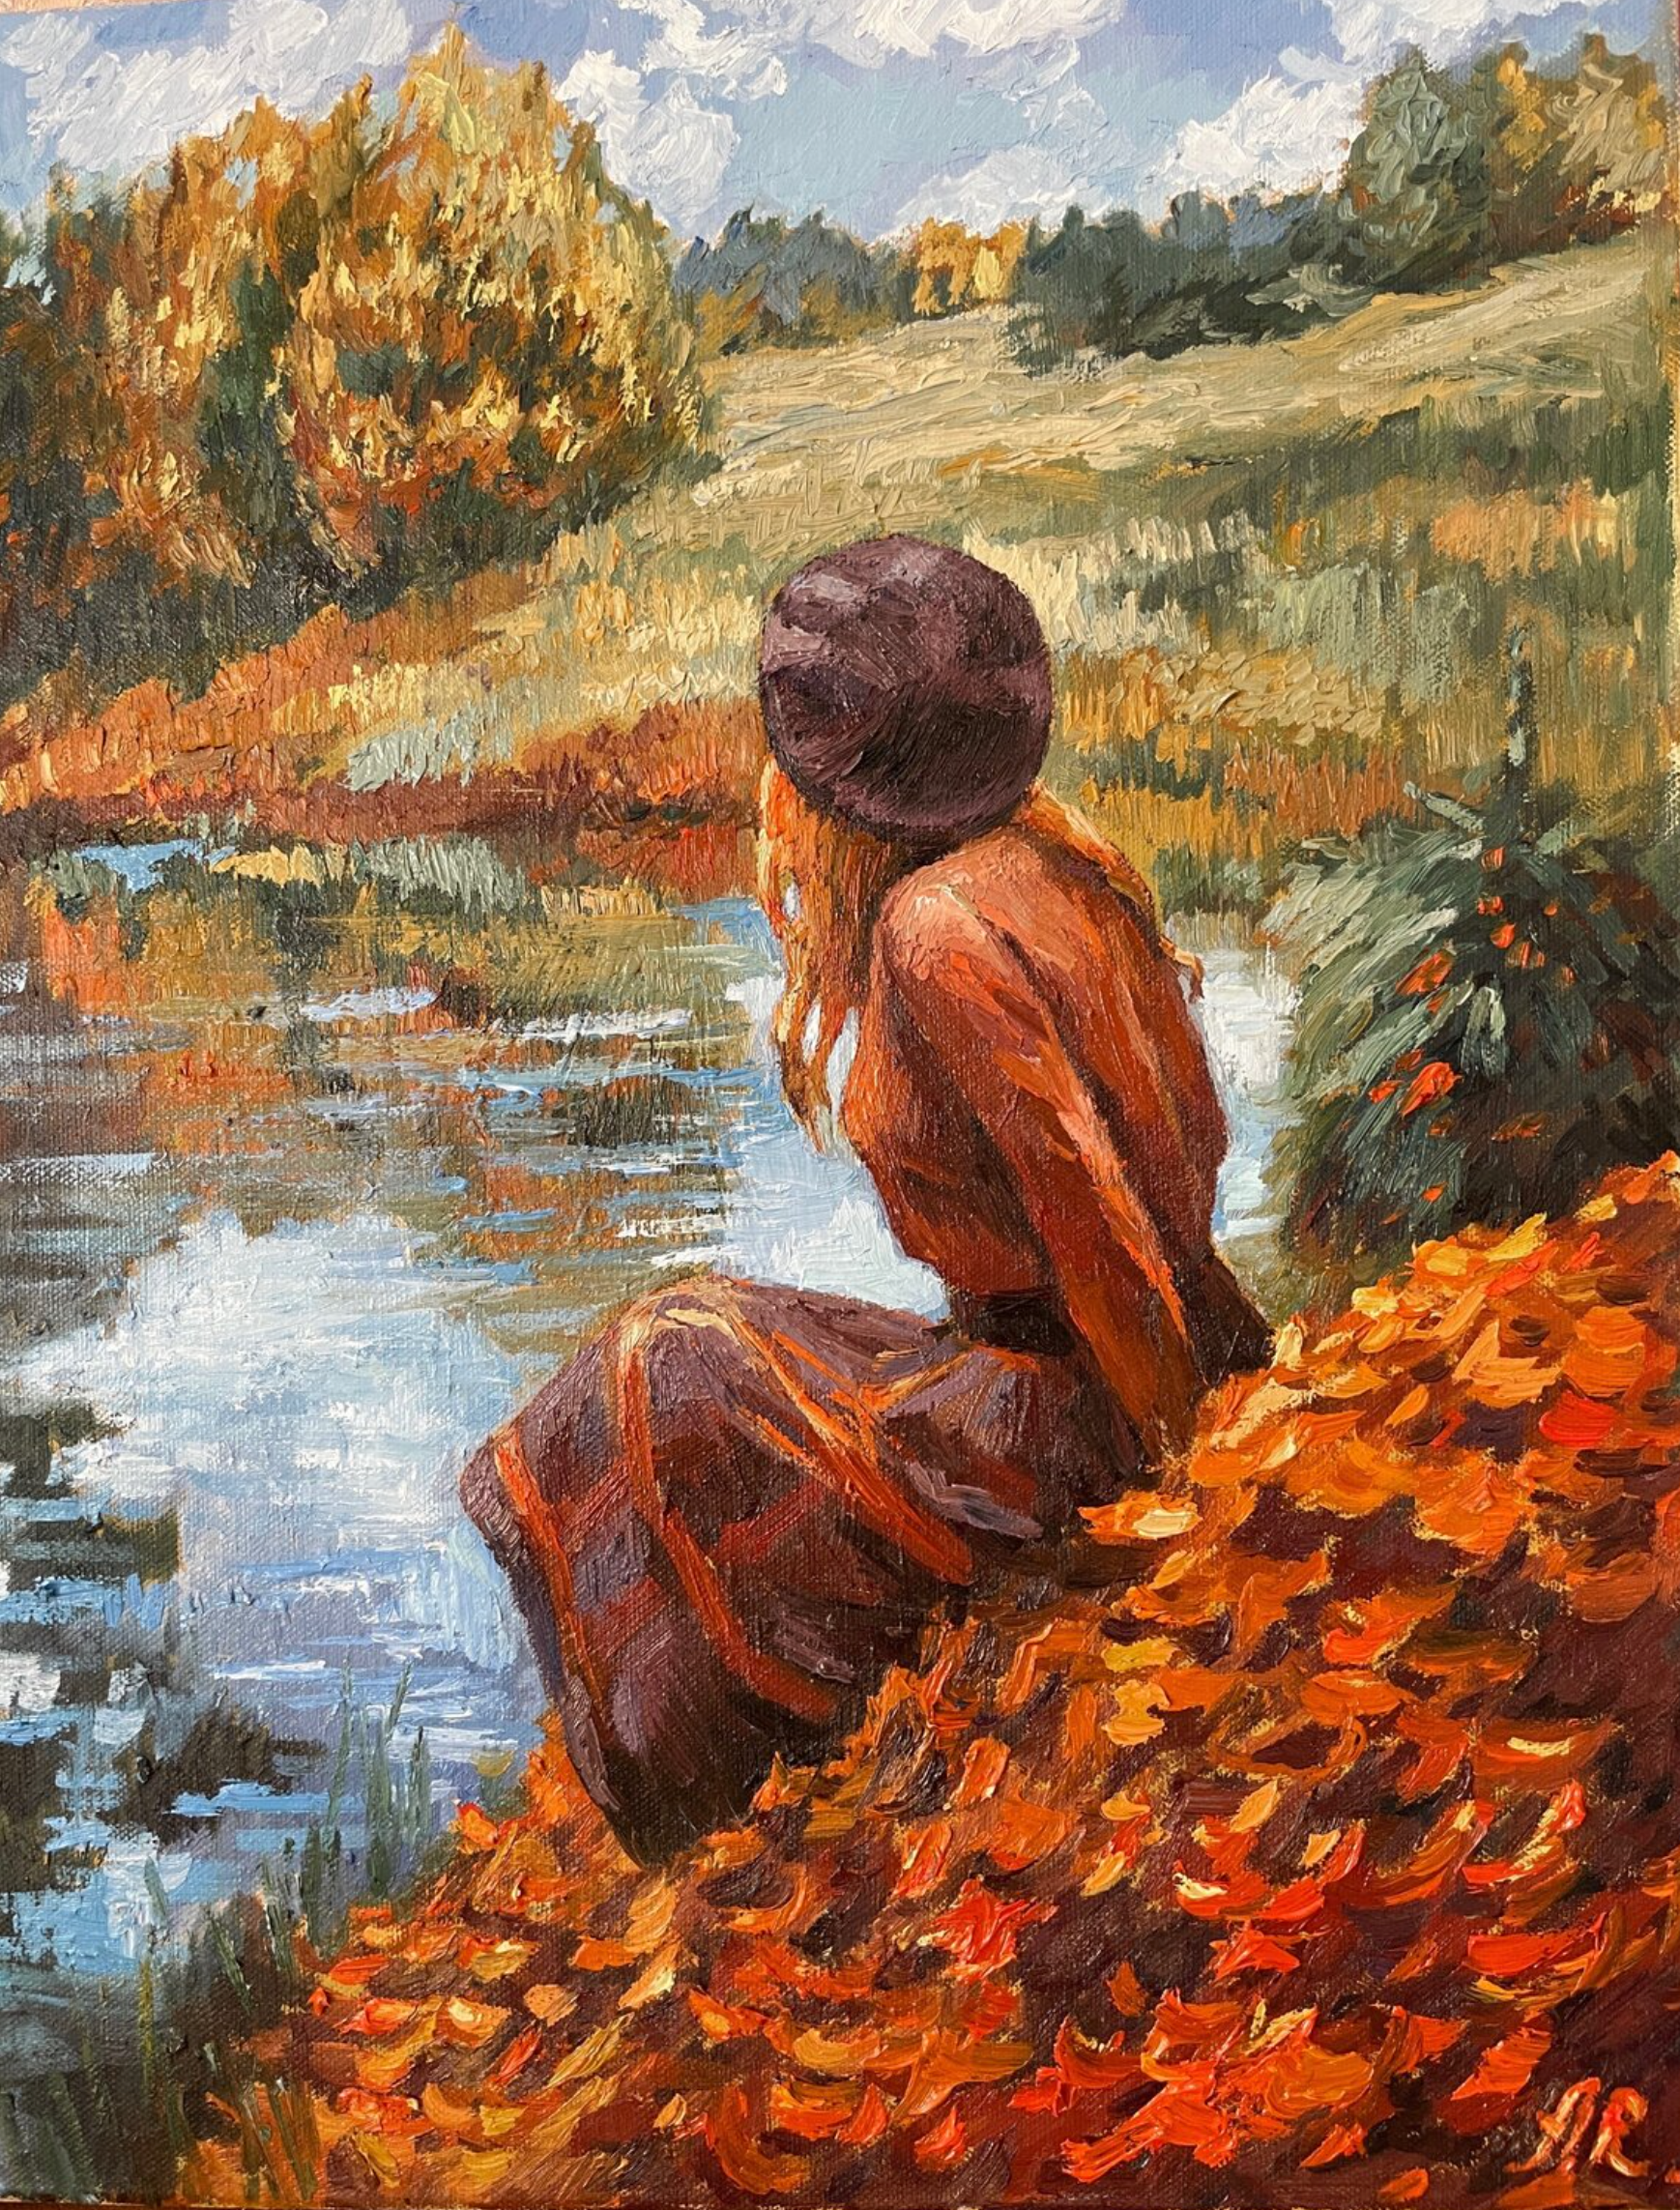 Le tableau "Autumn Fairy Tale" d'Anna Reznikova montre un magnifique paysage d'automne. Une jeune femme est assise sur une prairie au bord d'un lac, dans de magnifiques couleurs d'automne, marron, jaune, rouge. Peinte au pinceau sur une toile de coton.